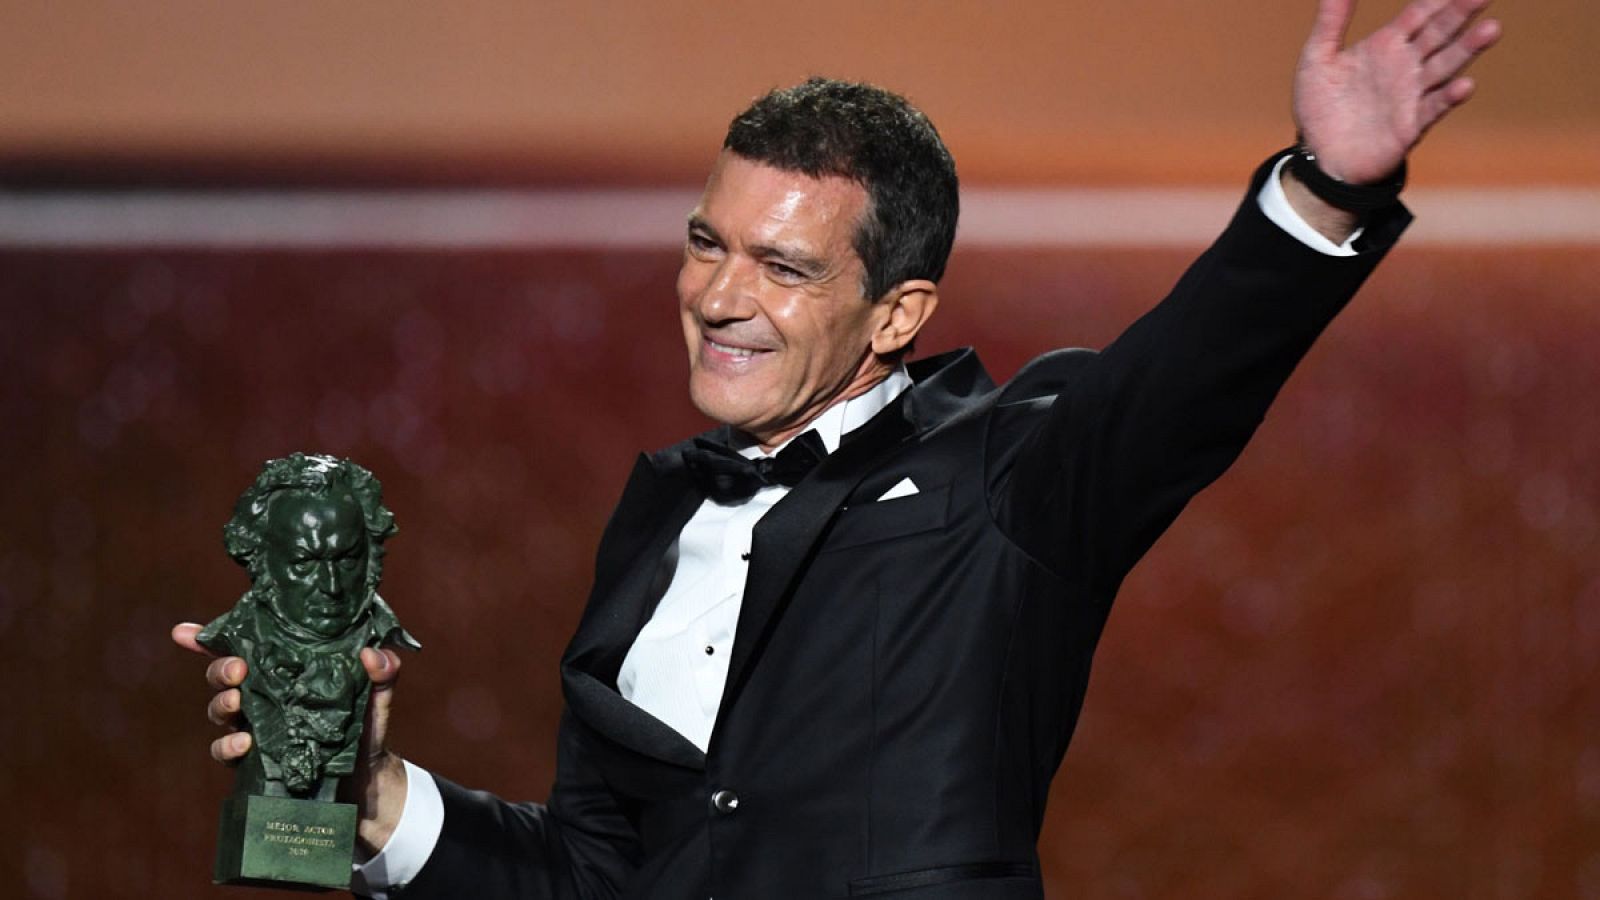 Premios Goya | Antonio Banderas, Goya al mejor actor protagonista: "Estoy vivo y me siento vivo"